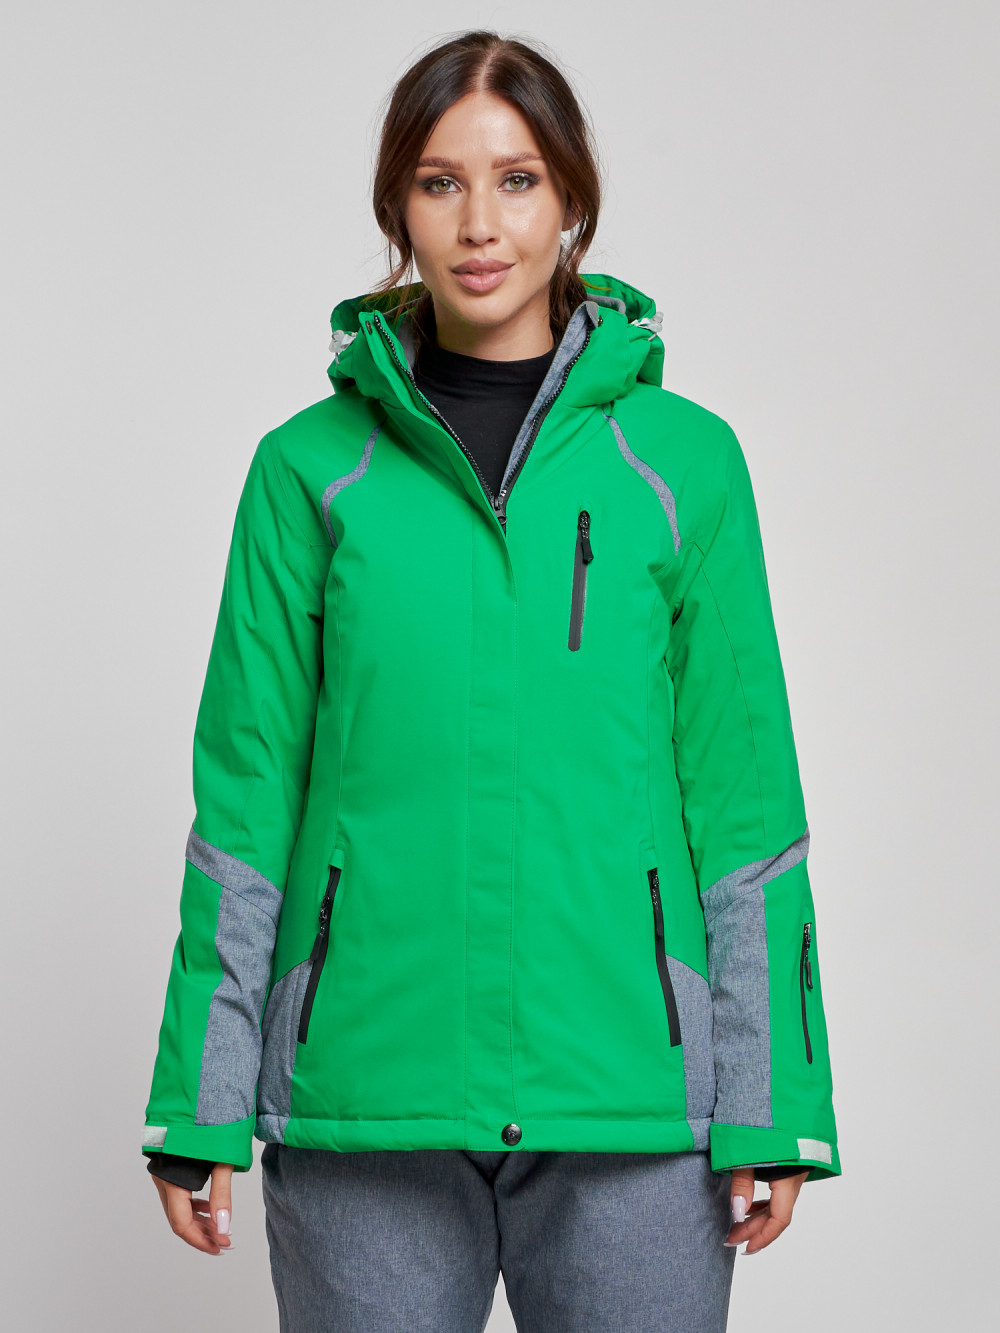 Купить оптом Горнолыжная куртка женская зимняя зеленого цвета 2316Z в Екатеринбурге